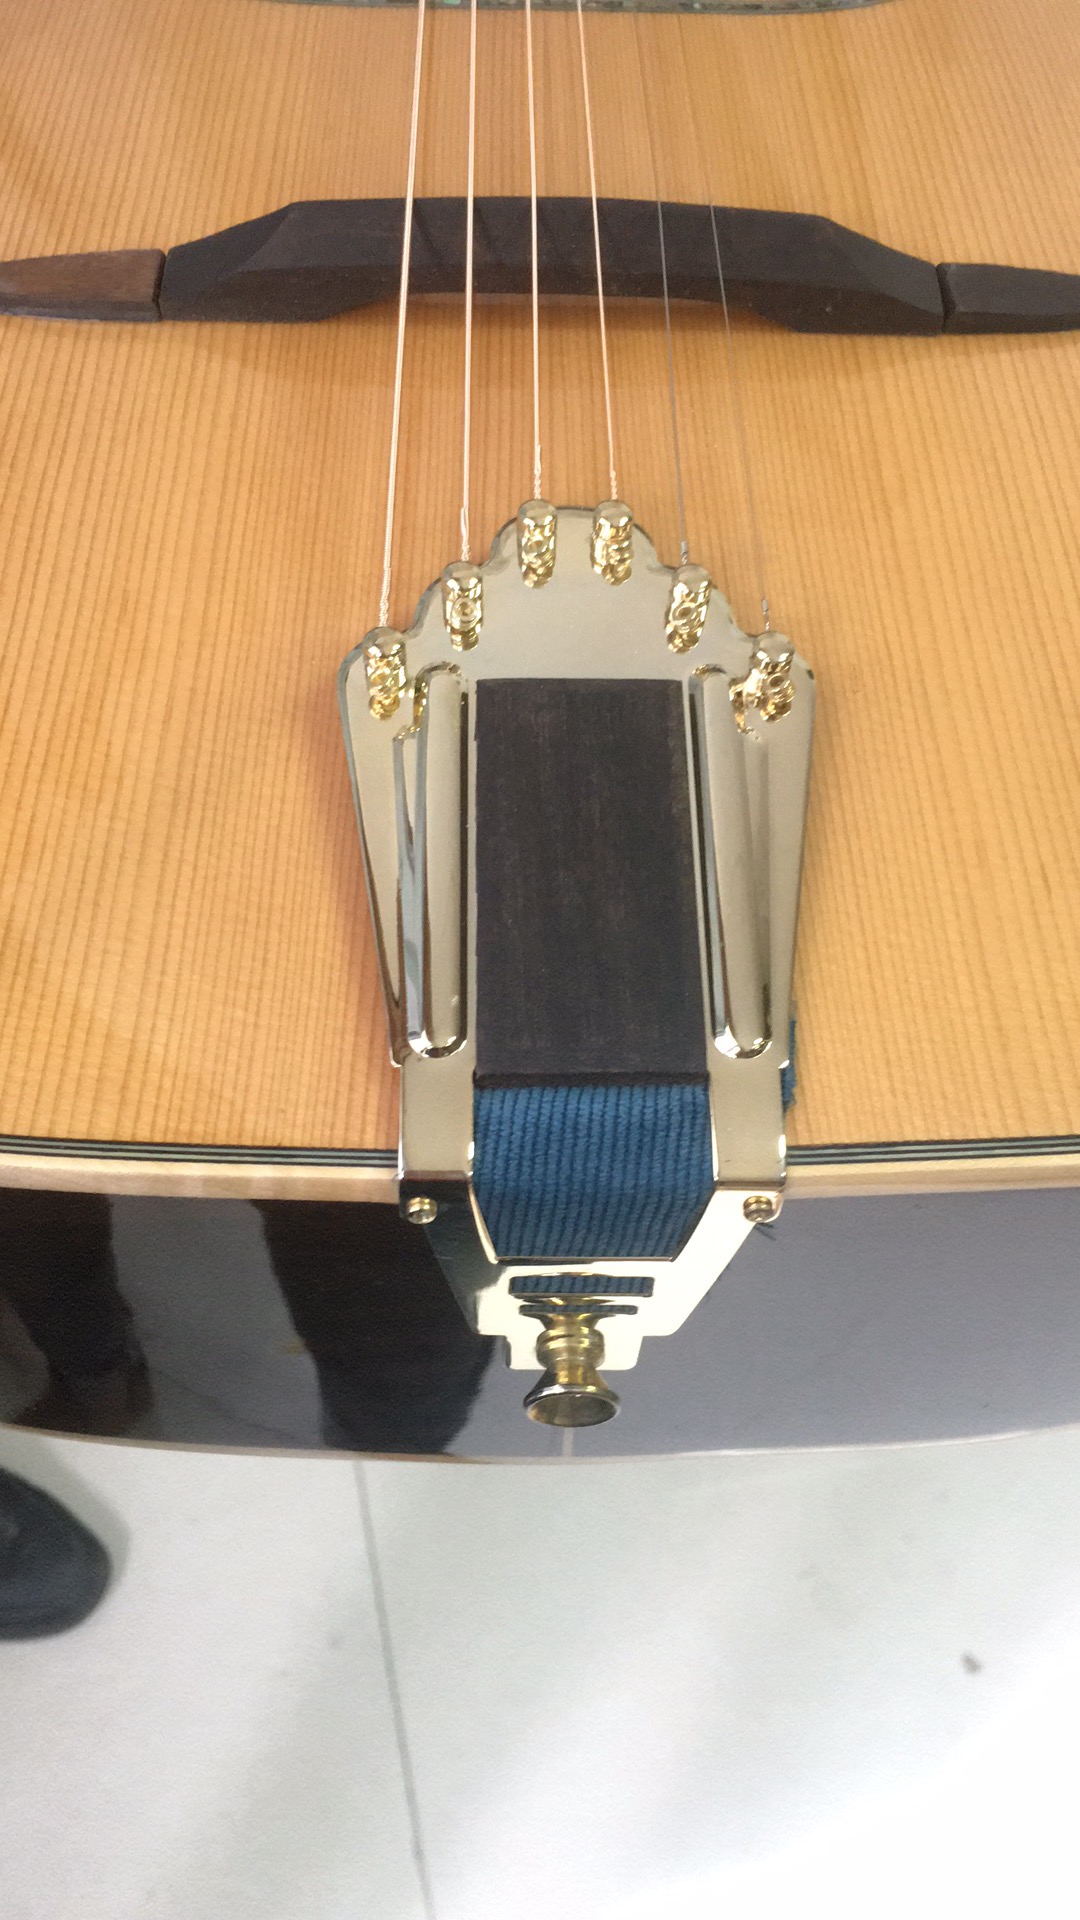 Цыганская джазовая гитара с верхом из кедра D или овальным отверстием (AGJ60)